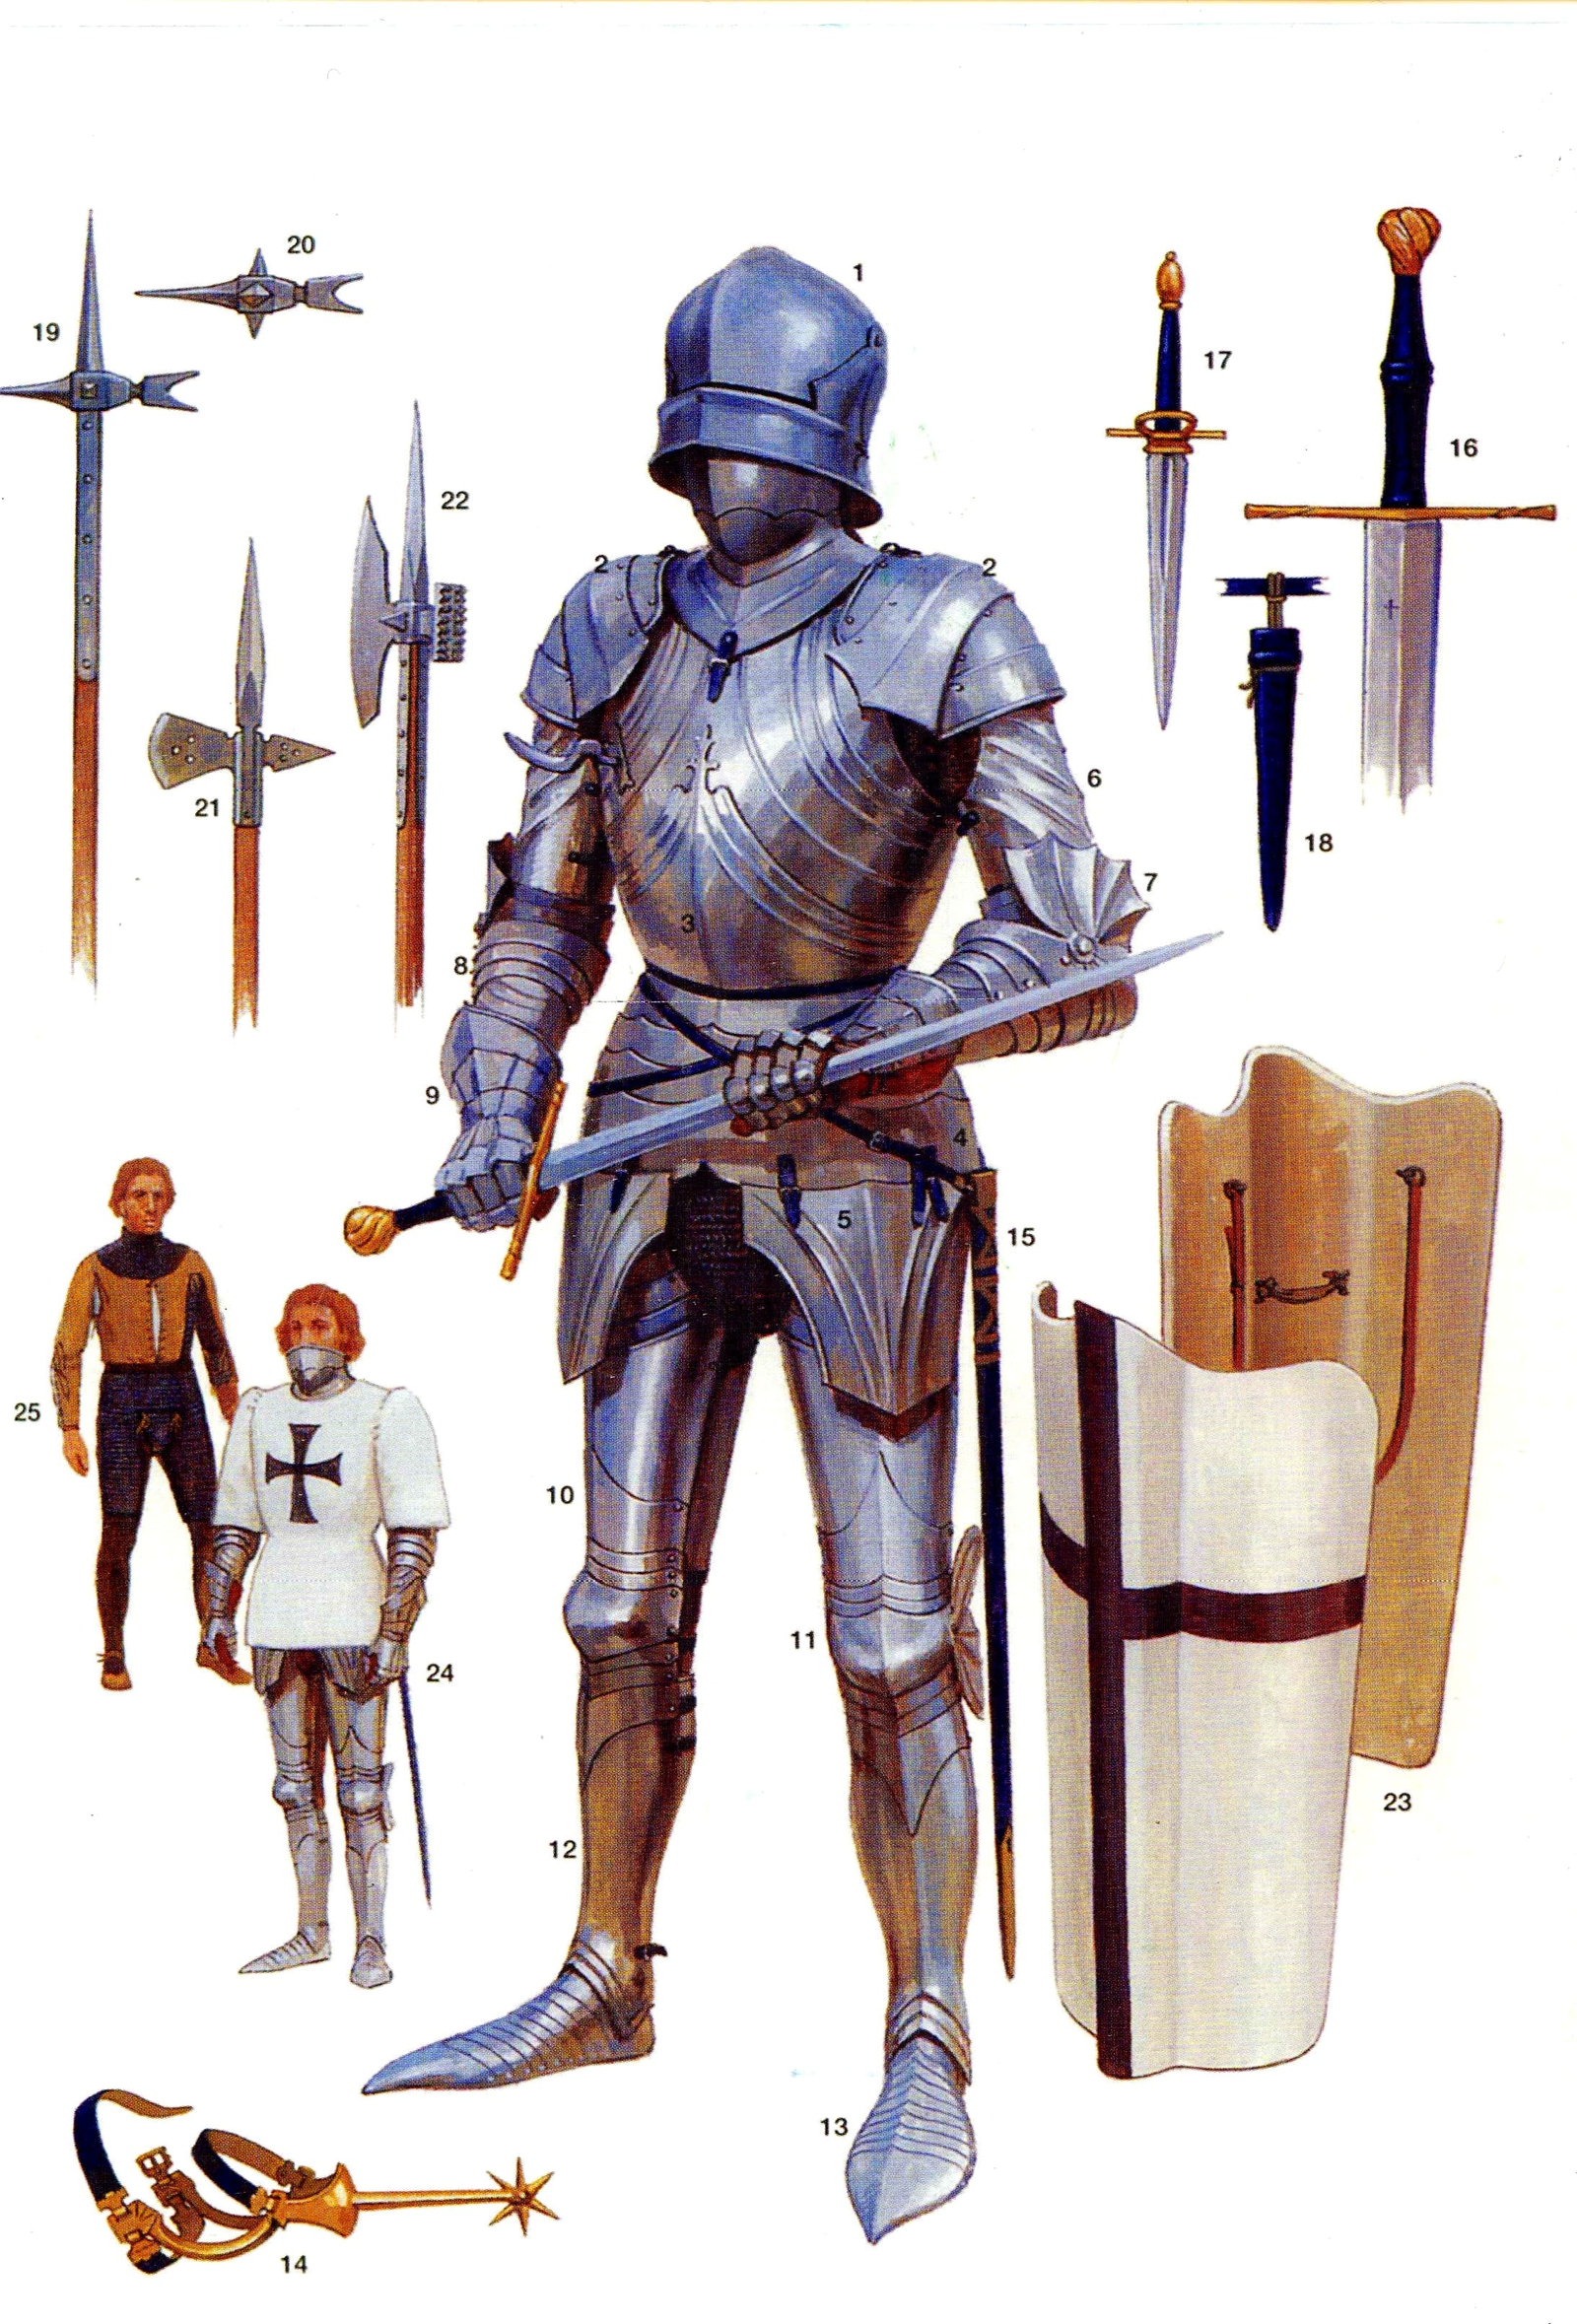 Оружие и доспехи тевтонского рыцаря вторая половина 15 века. Арт Грэм Тернер.